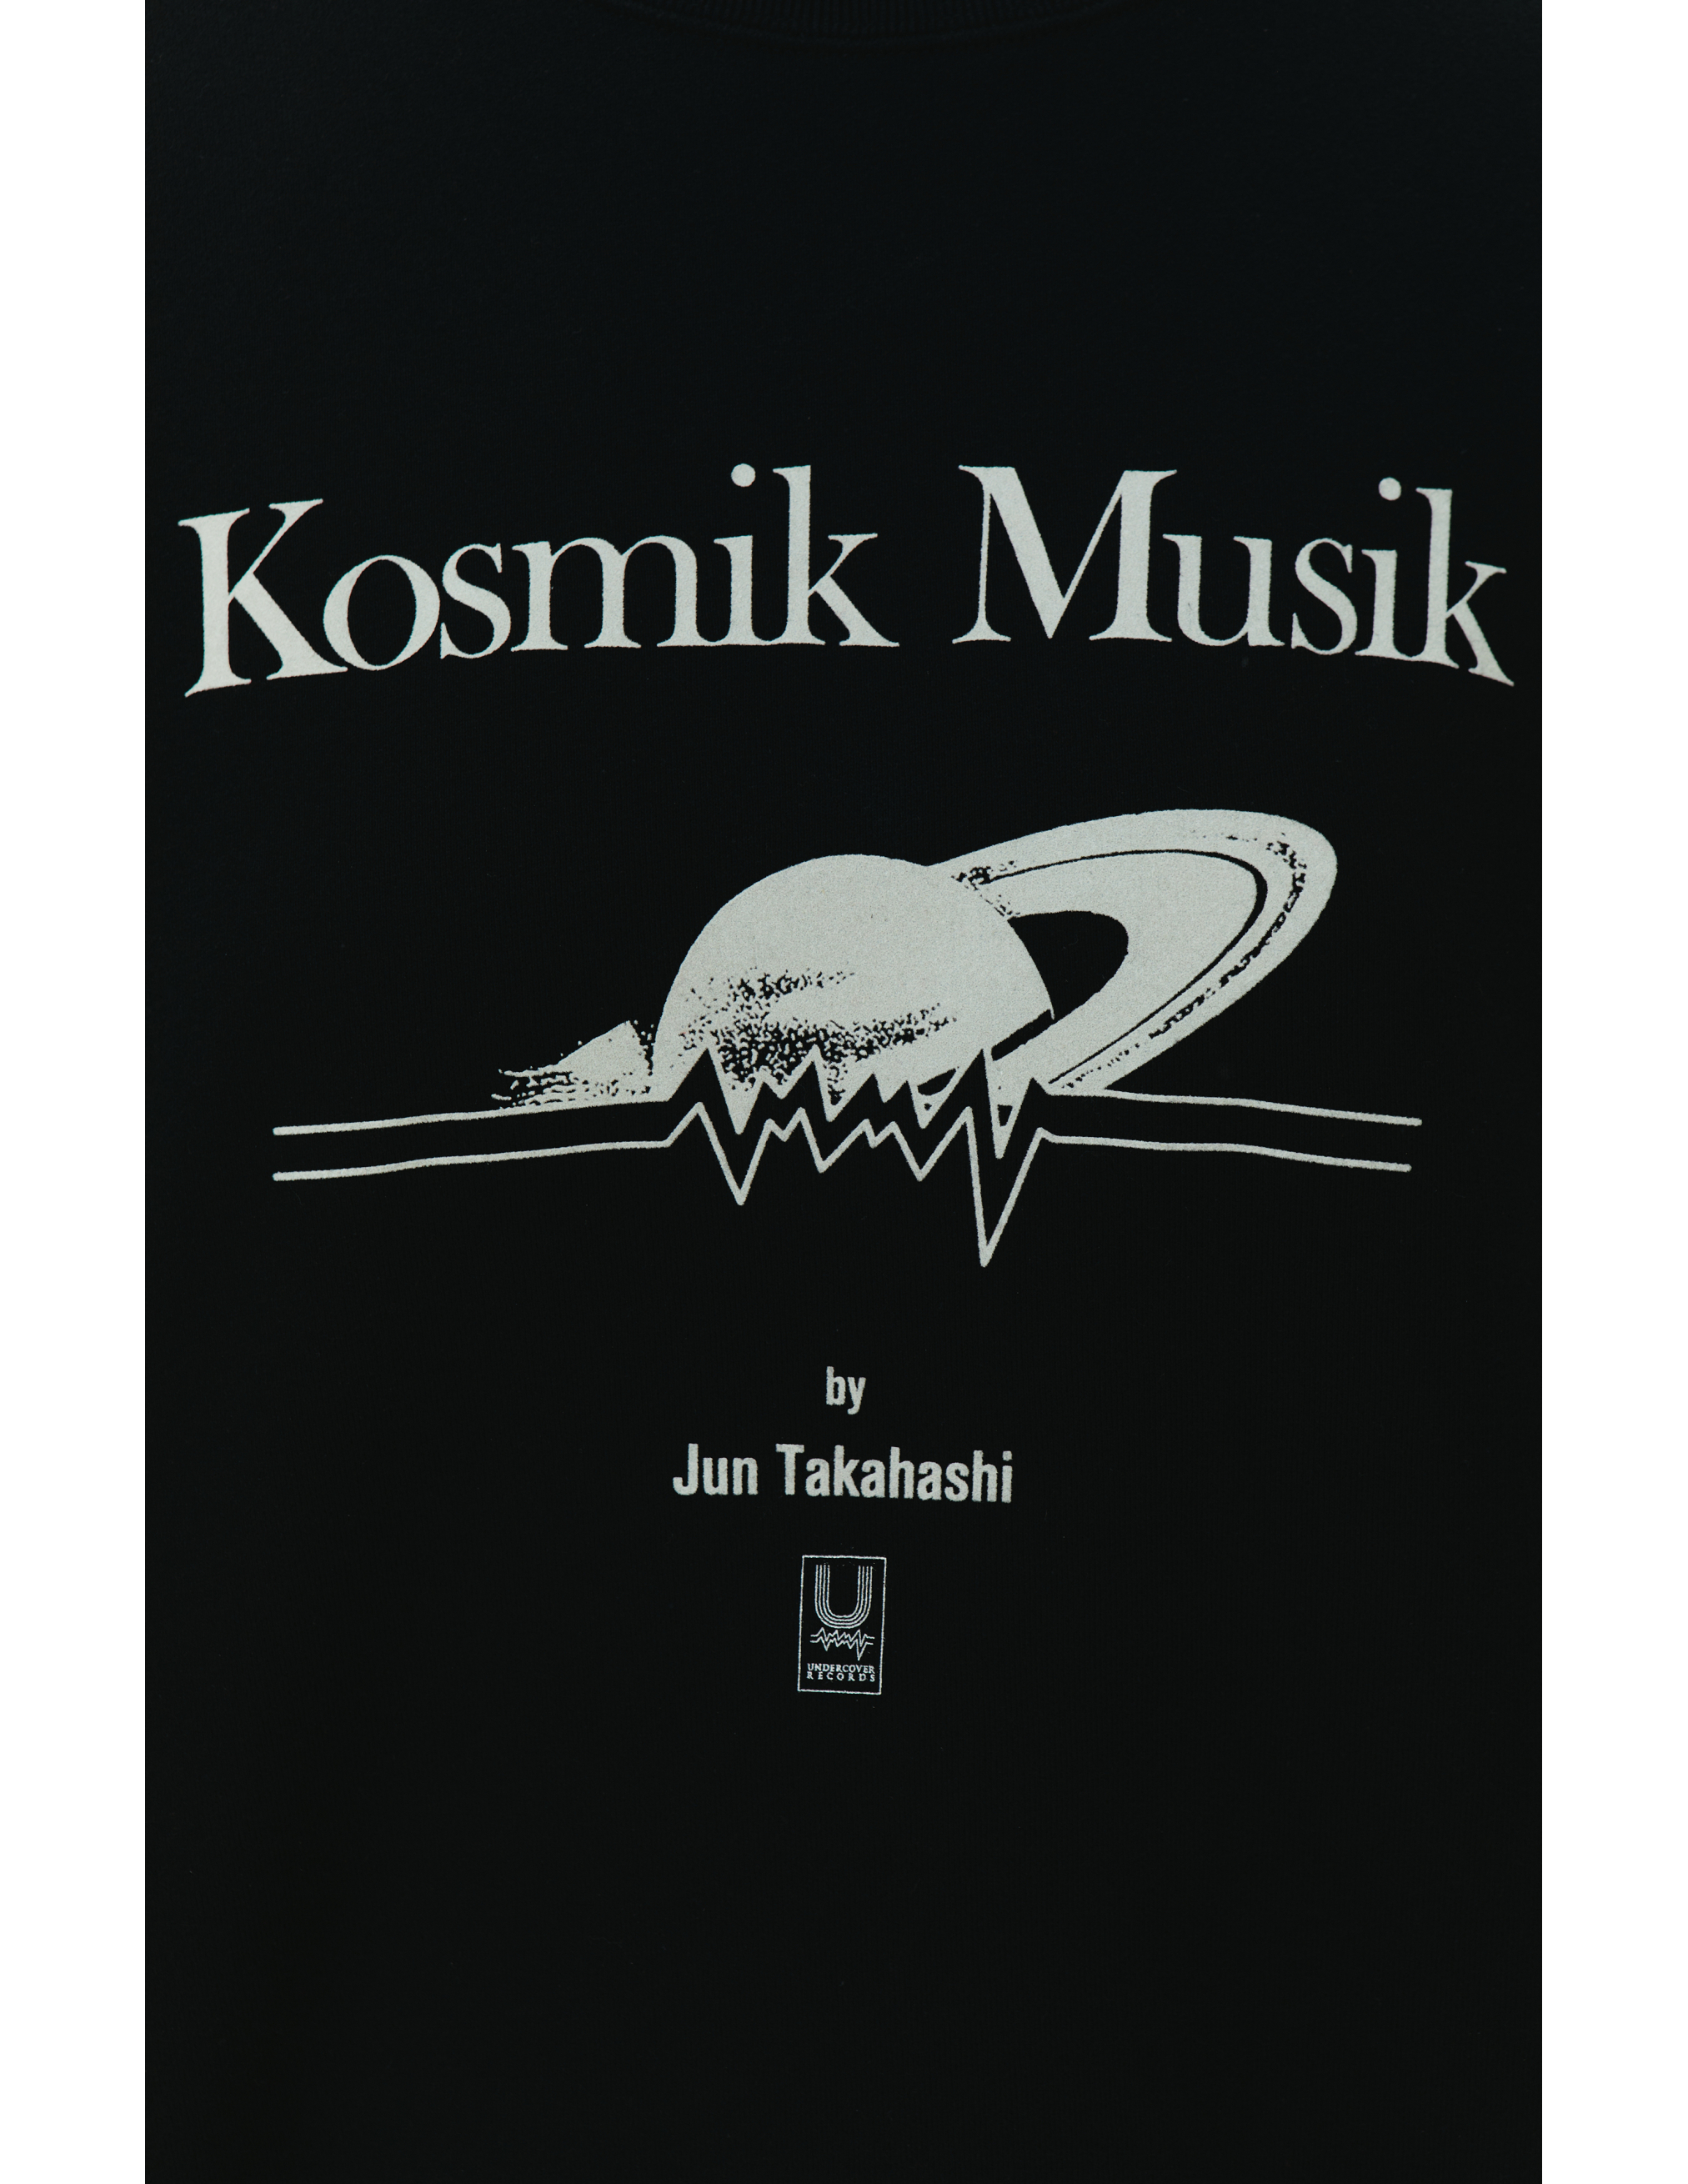 Свитшот с принтом Kosmik Musik Undercover UC2B4891/4, размер 4 UC2B4891/4 - фото 5